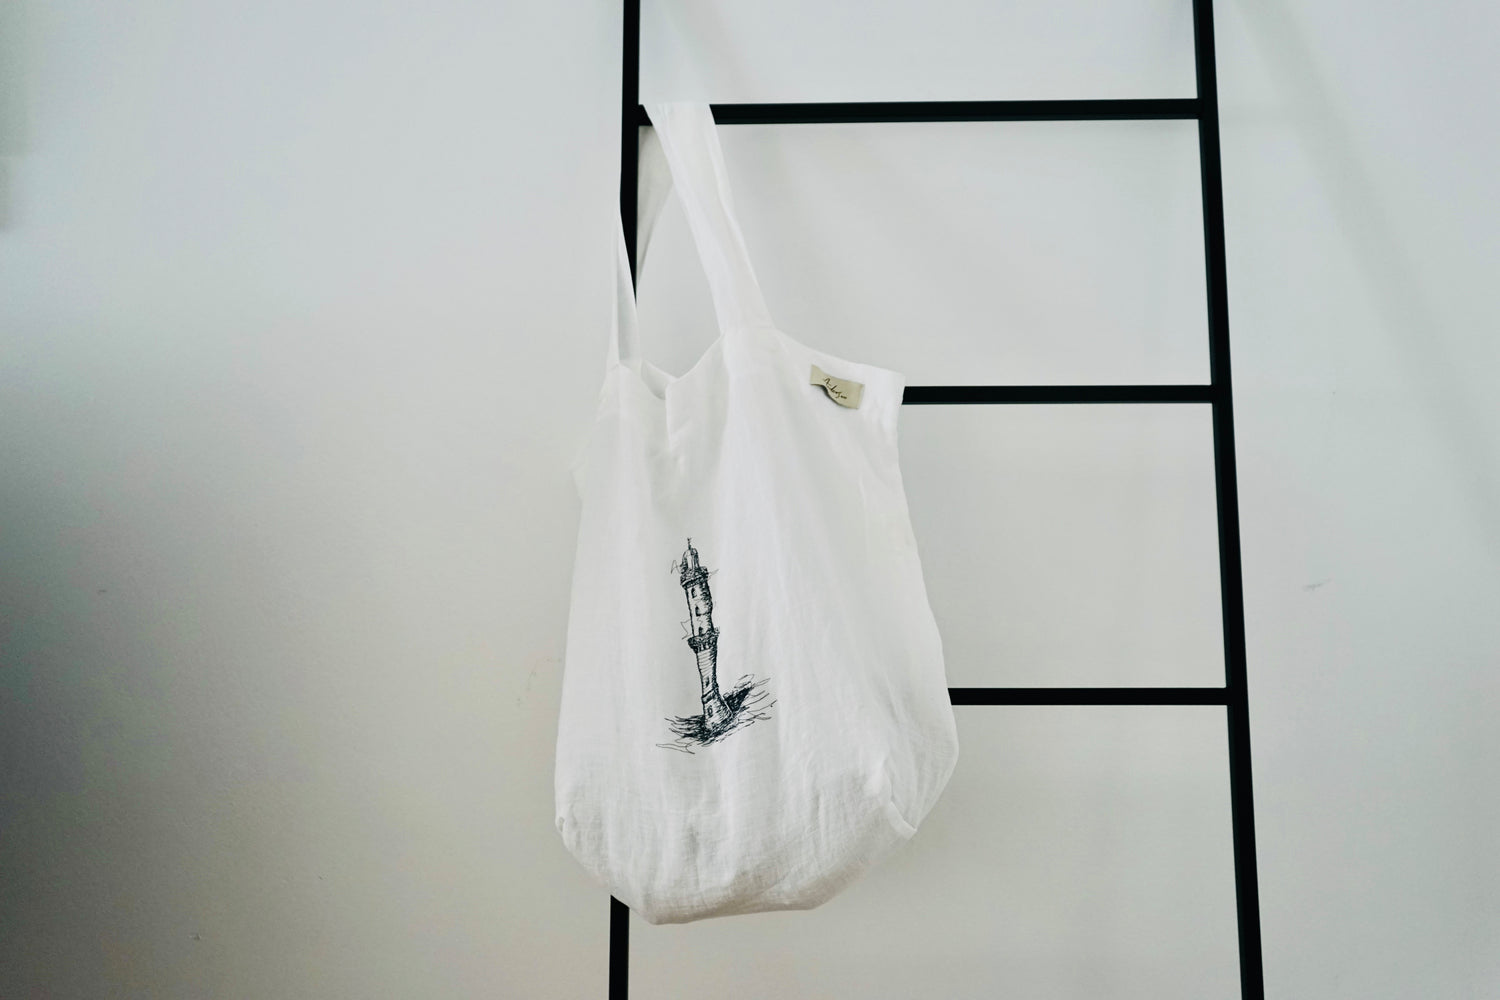 Tasche/Shopping Bag Leinen